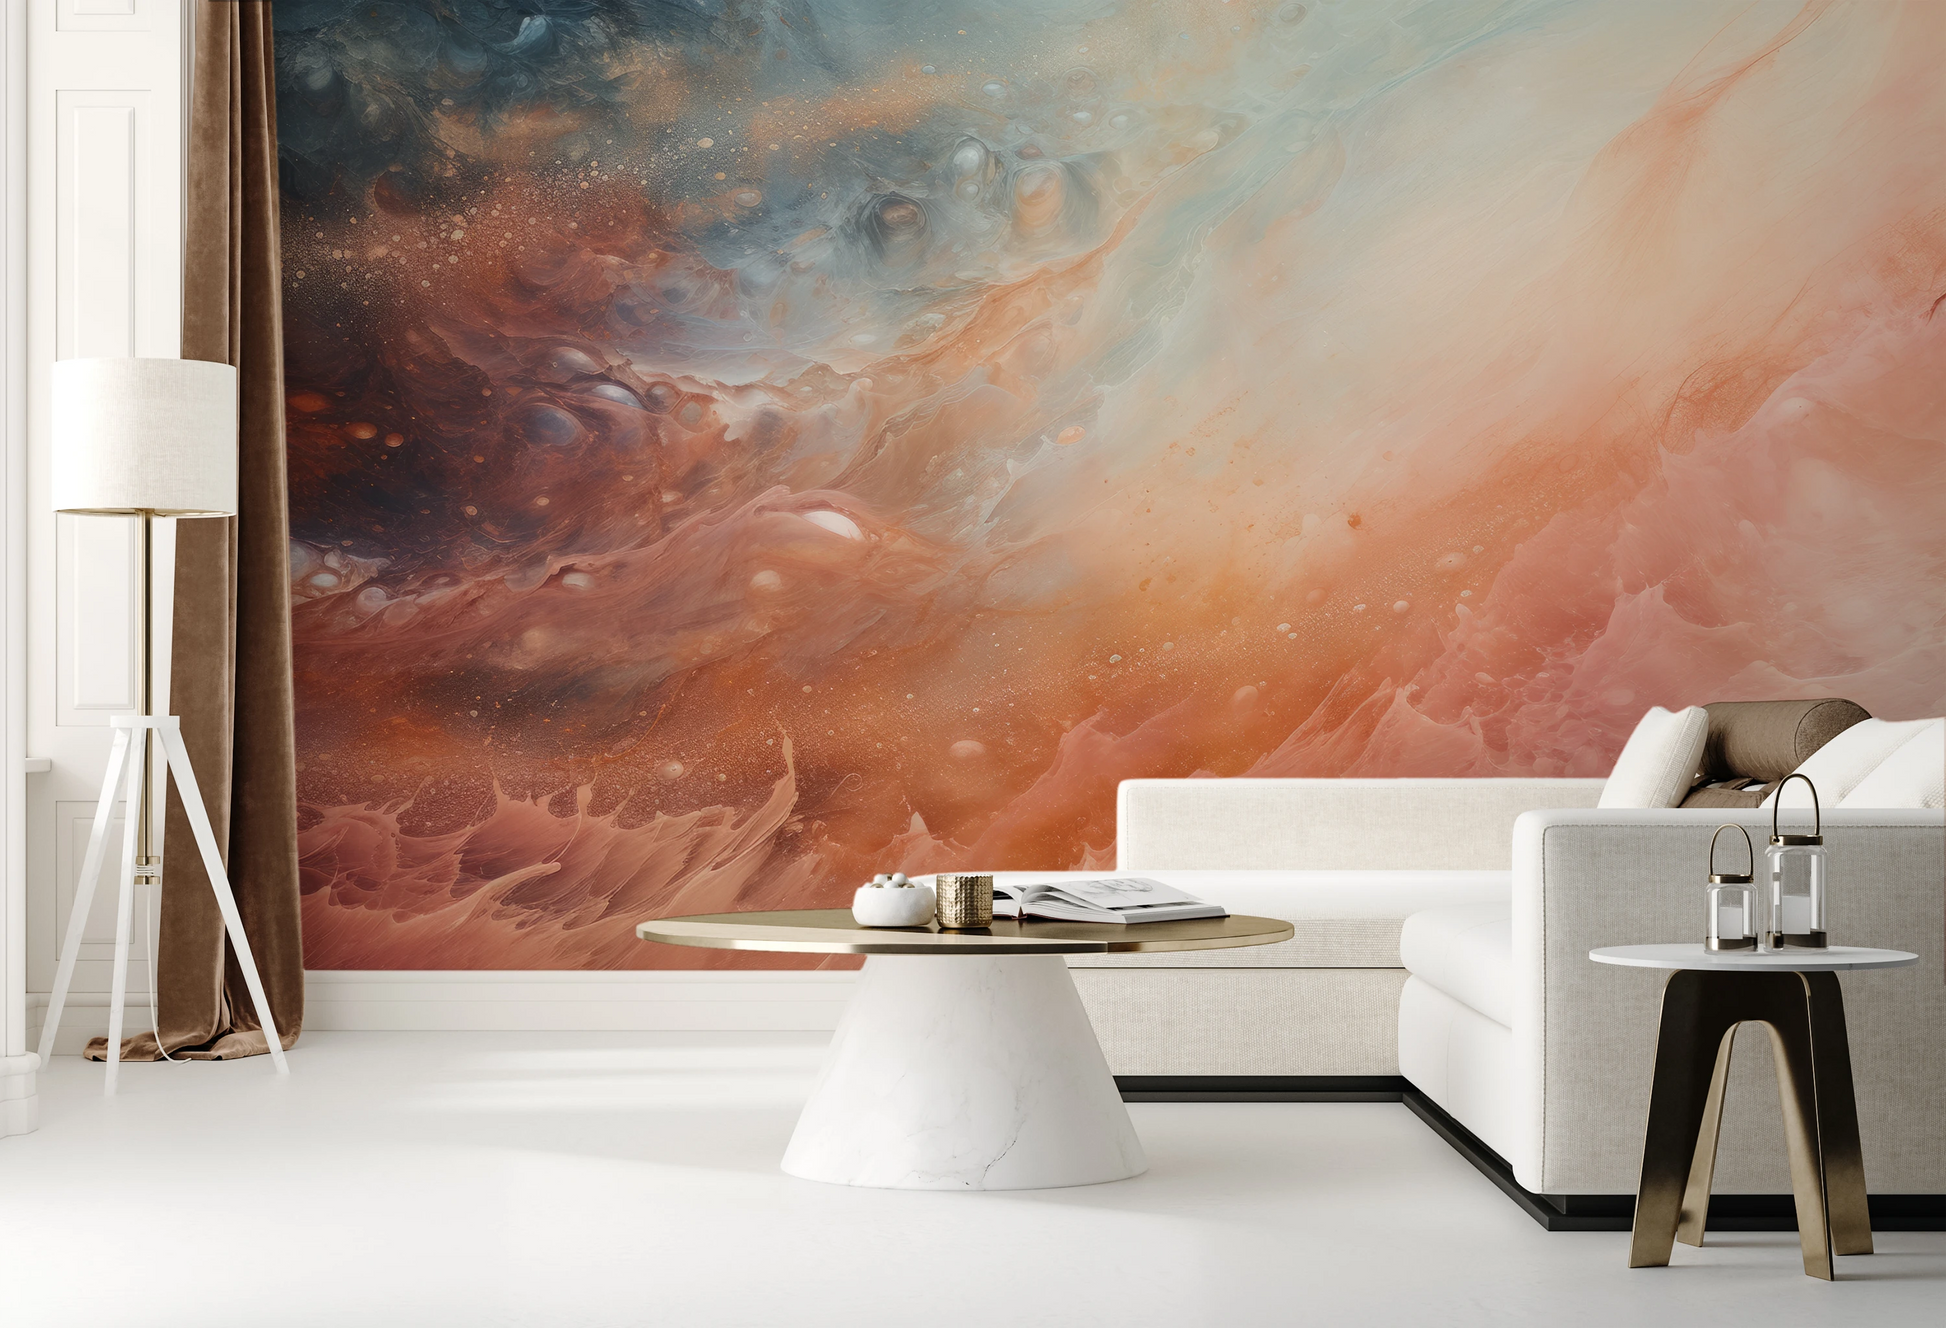 Fototapeta malowana o nazwie Solar Nebula pokazana w aranżacji wnętrza.